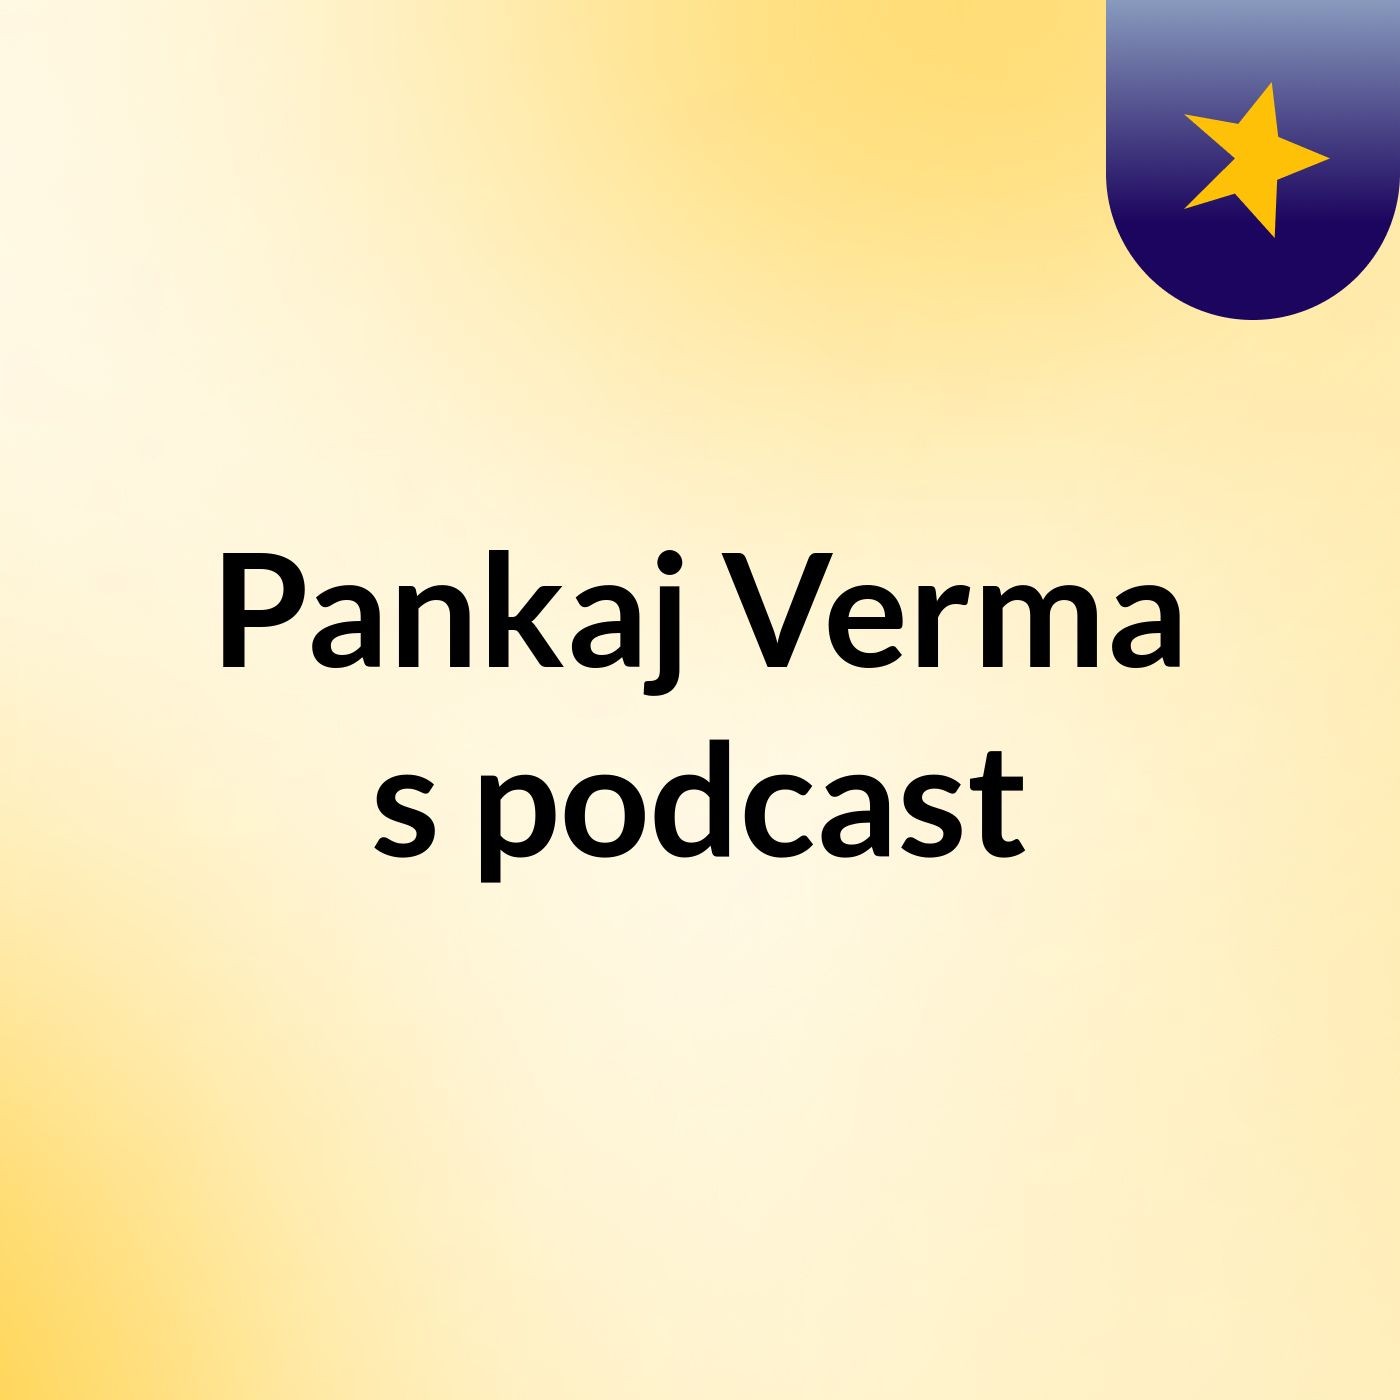 Pankaj Verma's podcast